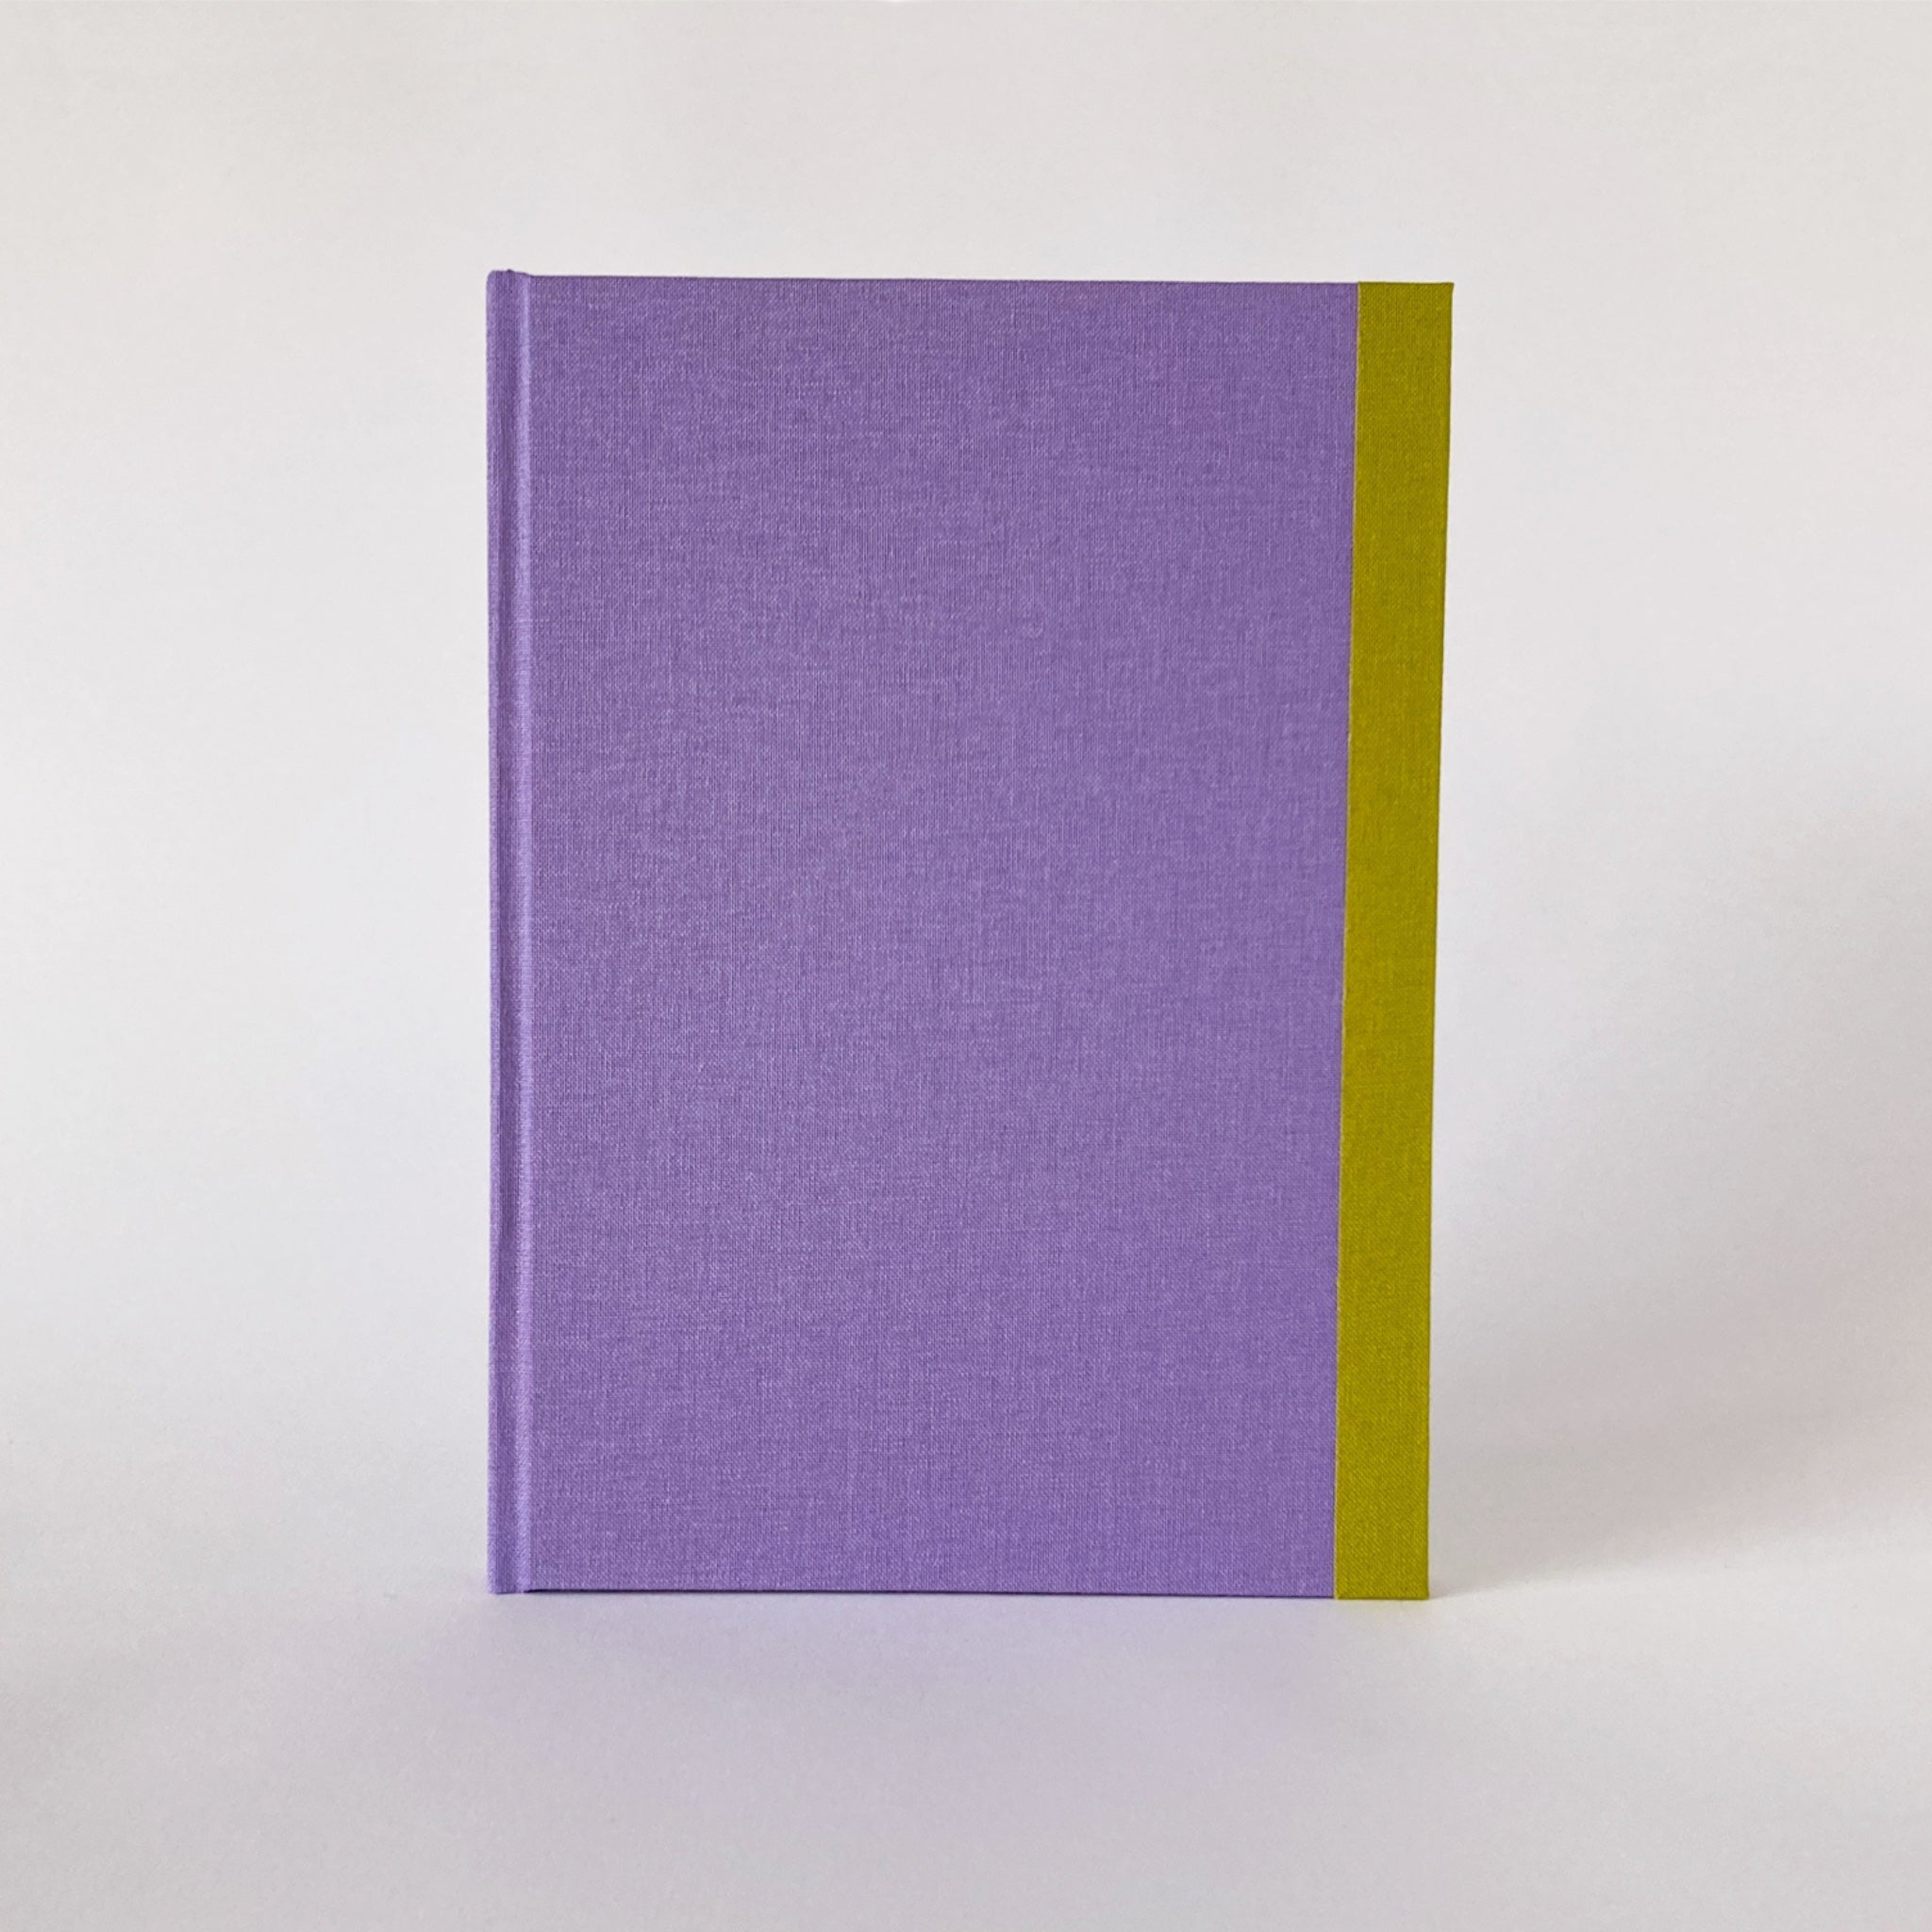 A5 hardback journal in light purple